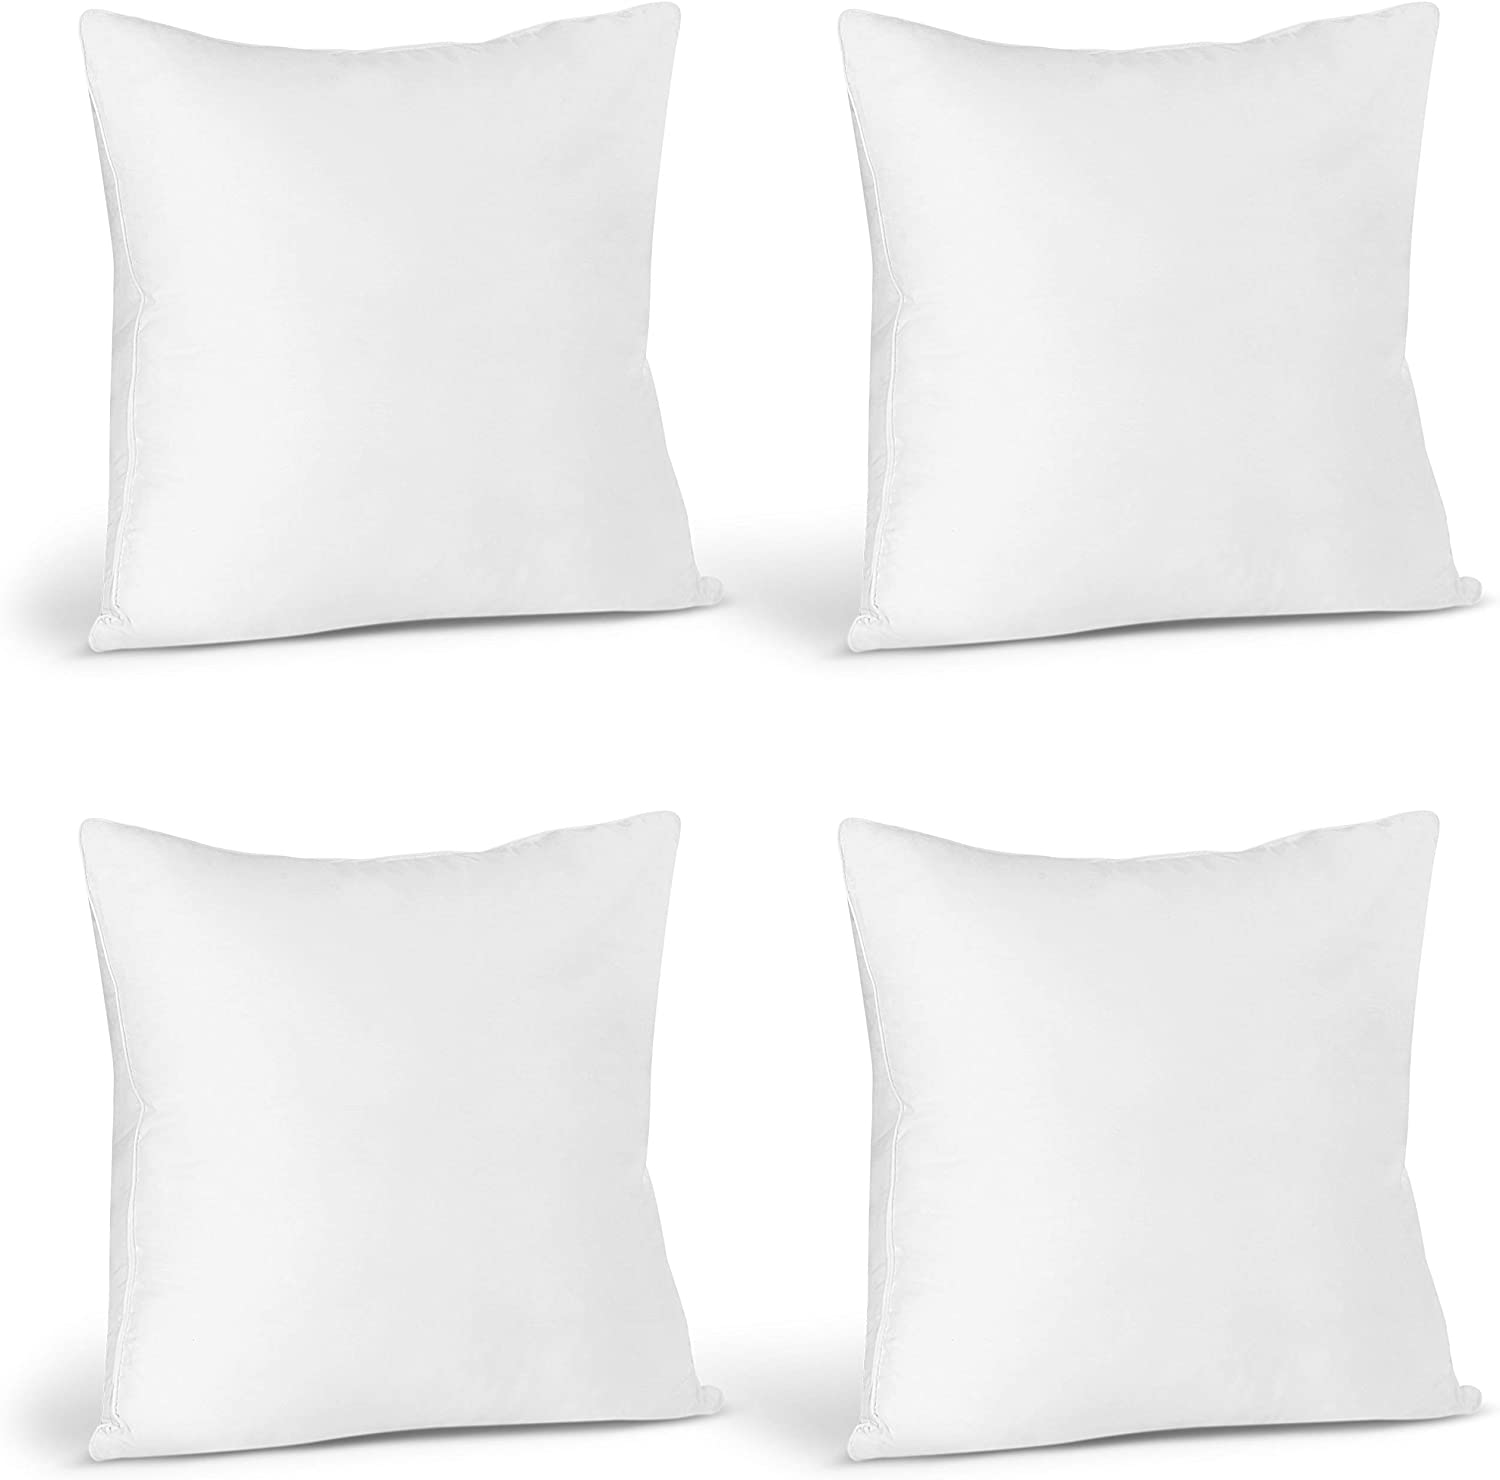 Edow Throw Pillow Inserts White 18x18 New Sealed